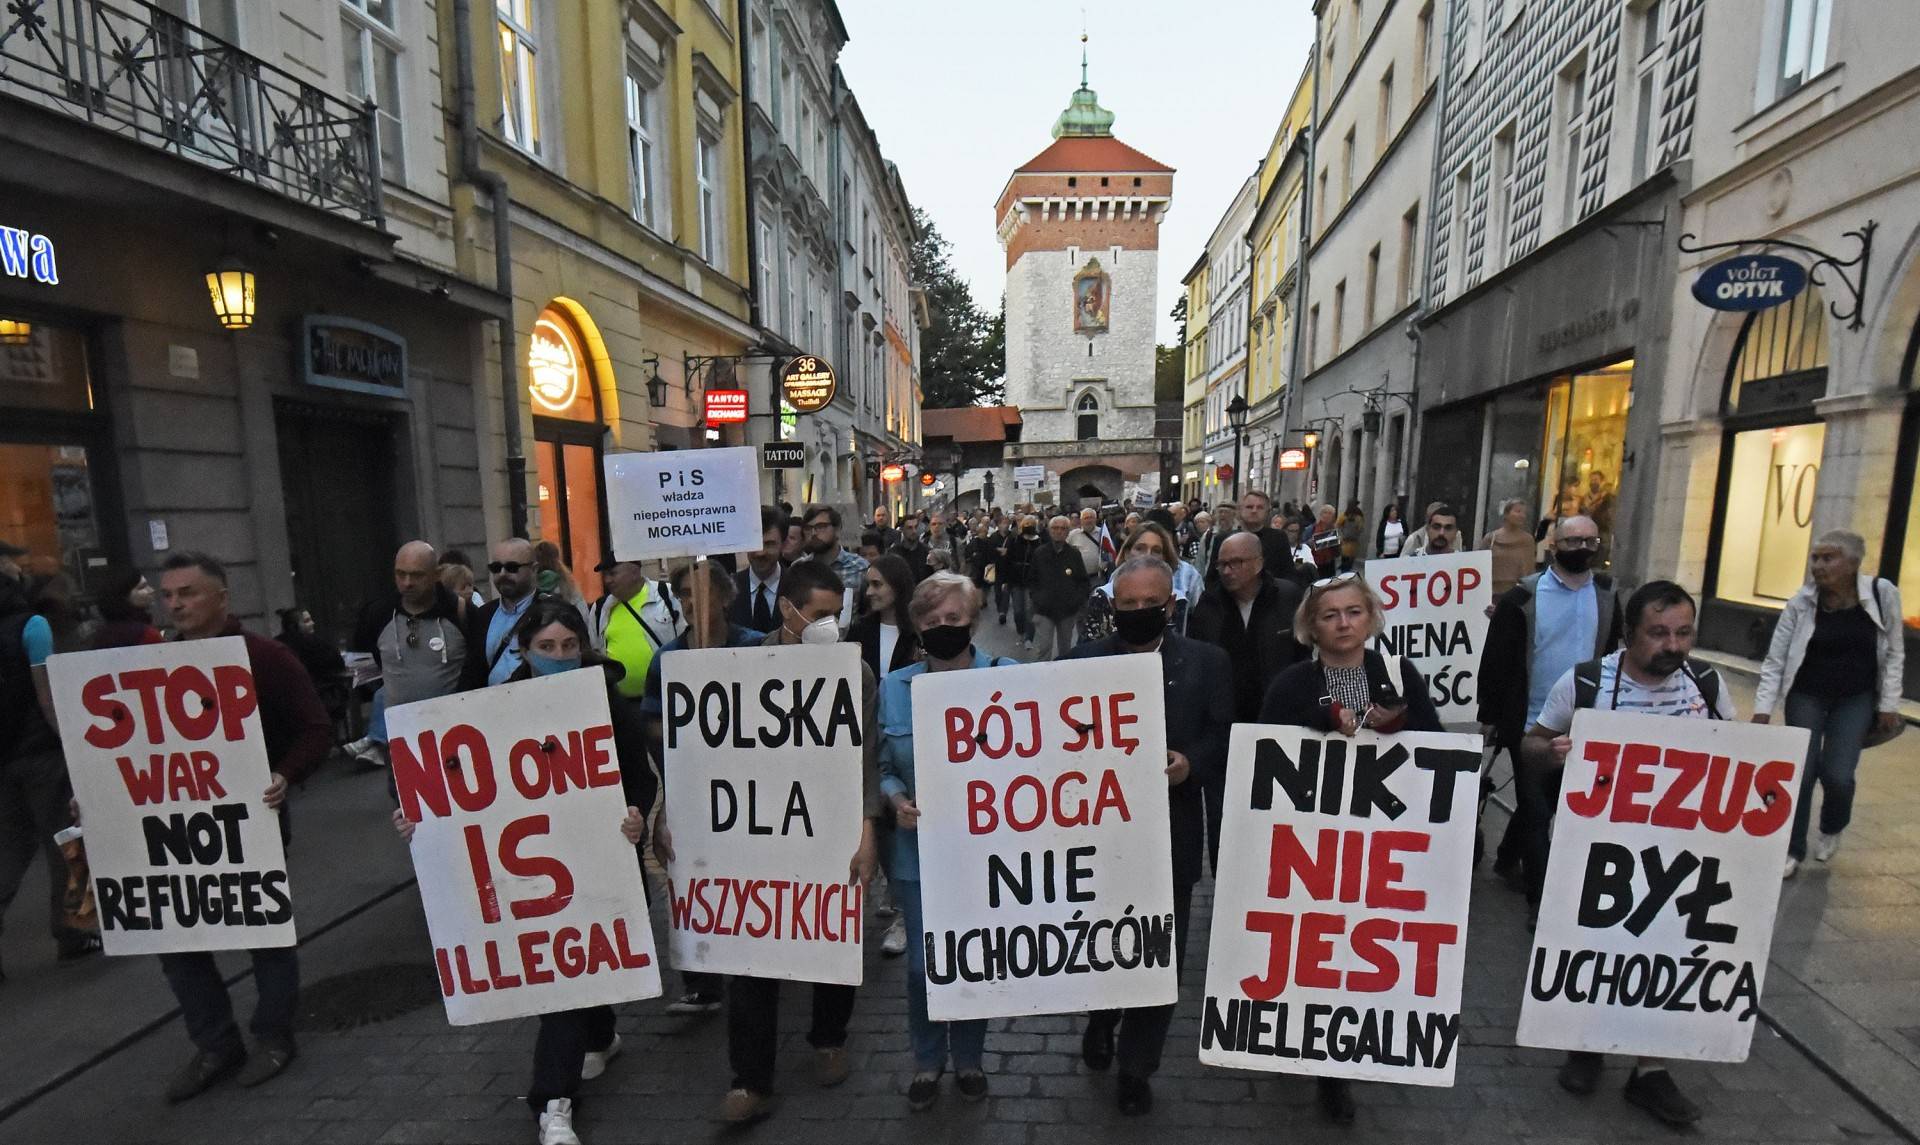 Bój się Boga, nie uchodźców. Protest w Krakowie